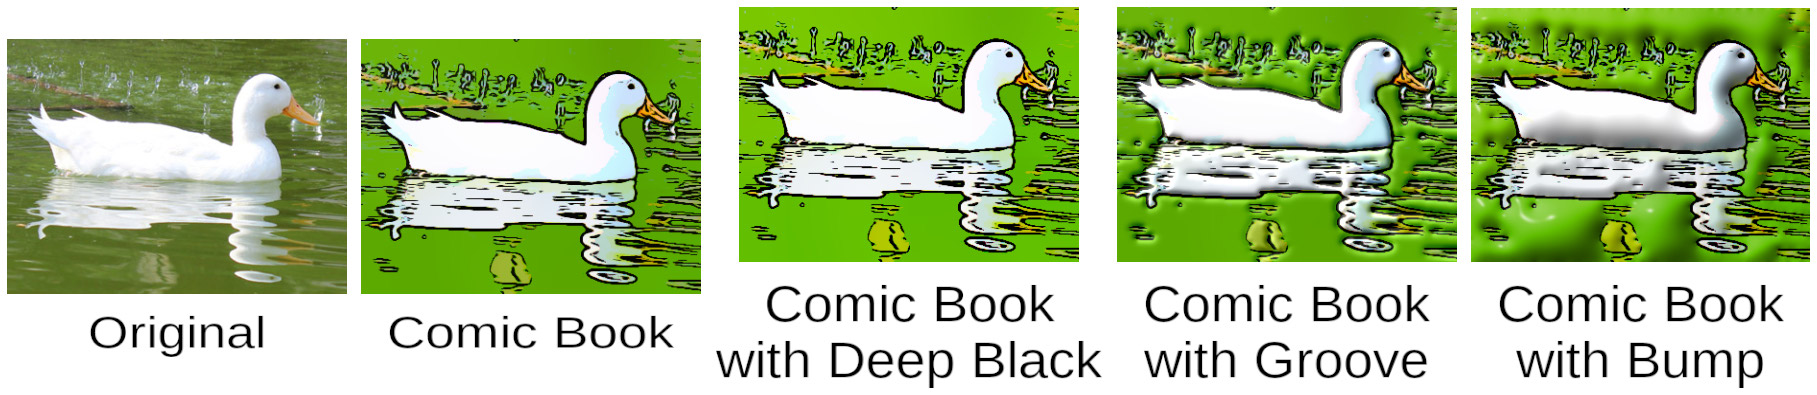 377-white-duck-in-greenish-water_addiEffect.jpg